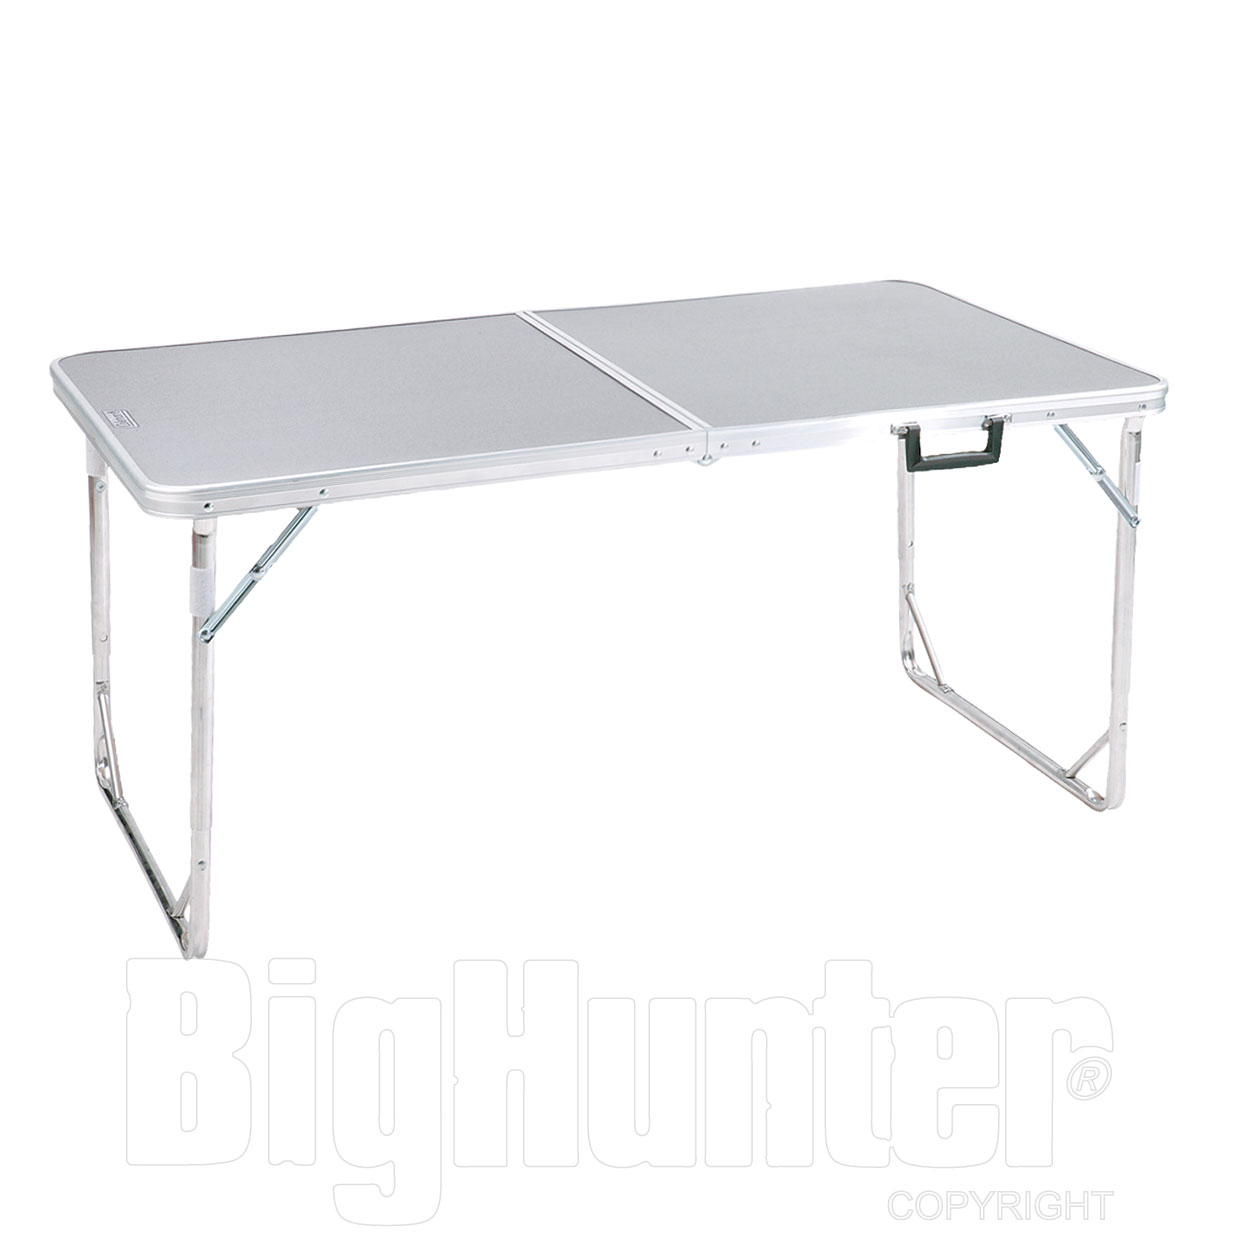 COLEMAN campeggio tavolo 80x80cm in alluminio Tavolo pieghevole Tavolo Quadrato Modello 2016 